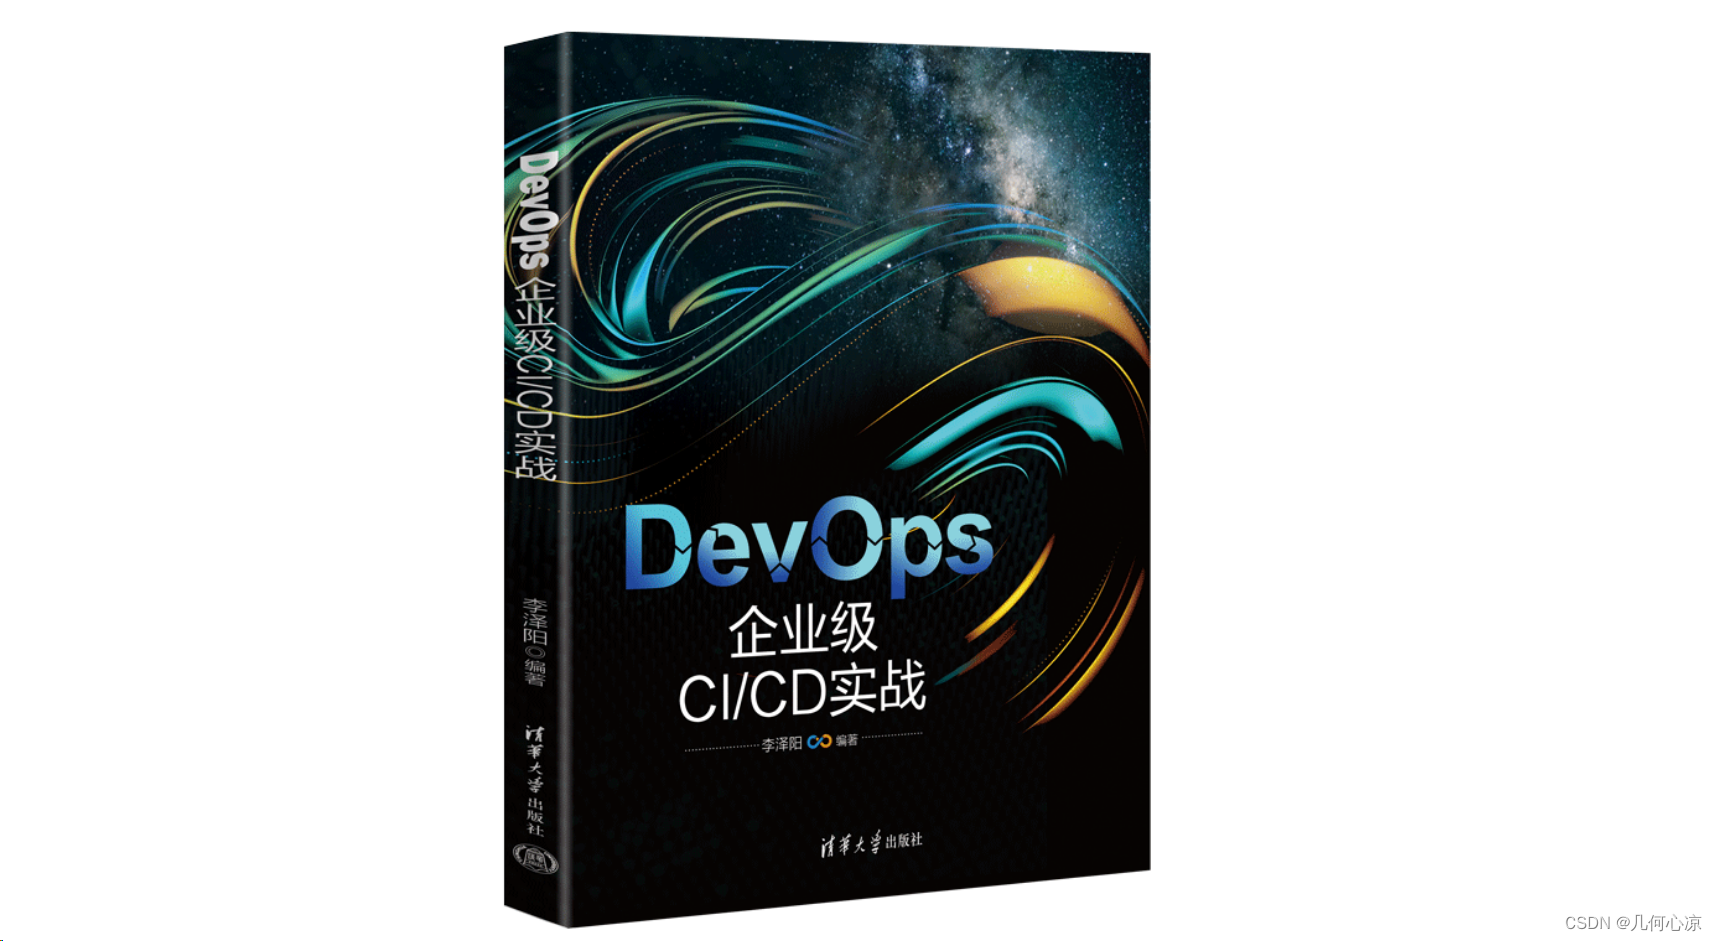 《DevOps企业级CI/CD实战》：一站式掌握DevOps核心方法论，实现高效自动化部署